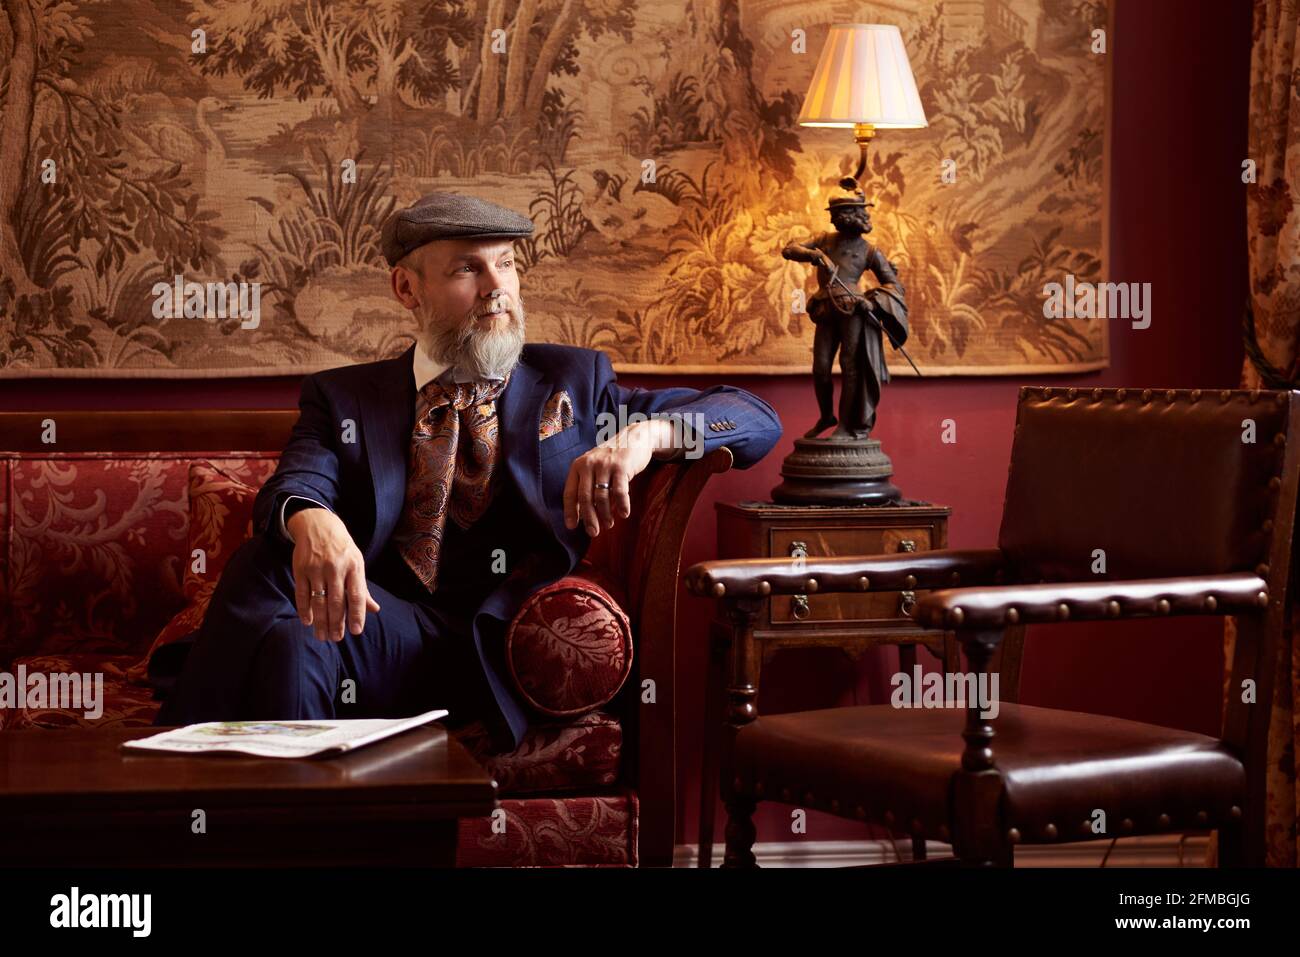 Homme avec une barbe complète en costume dans un Maison de campagne anglaise digne Banque D'Images